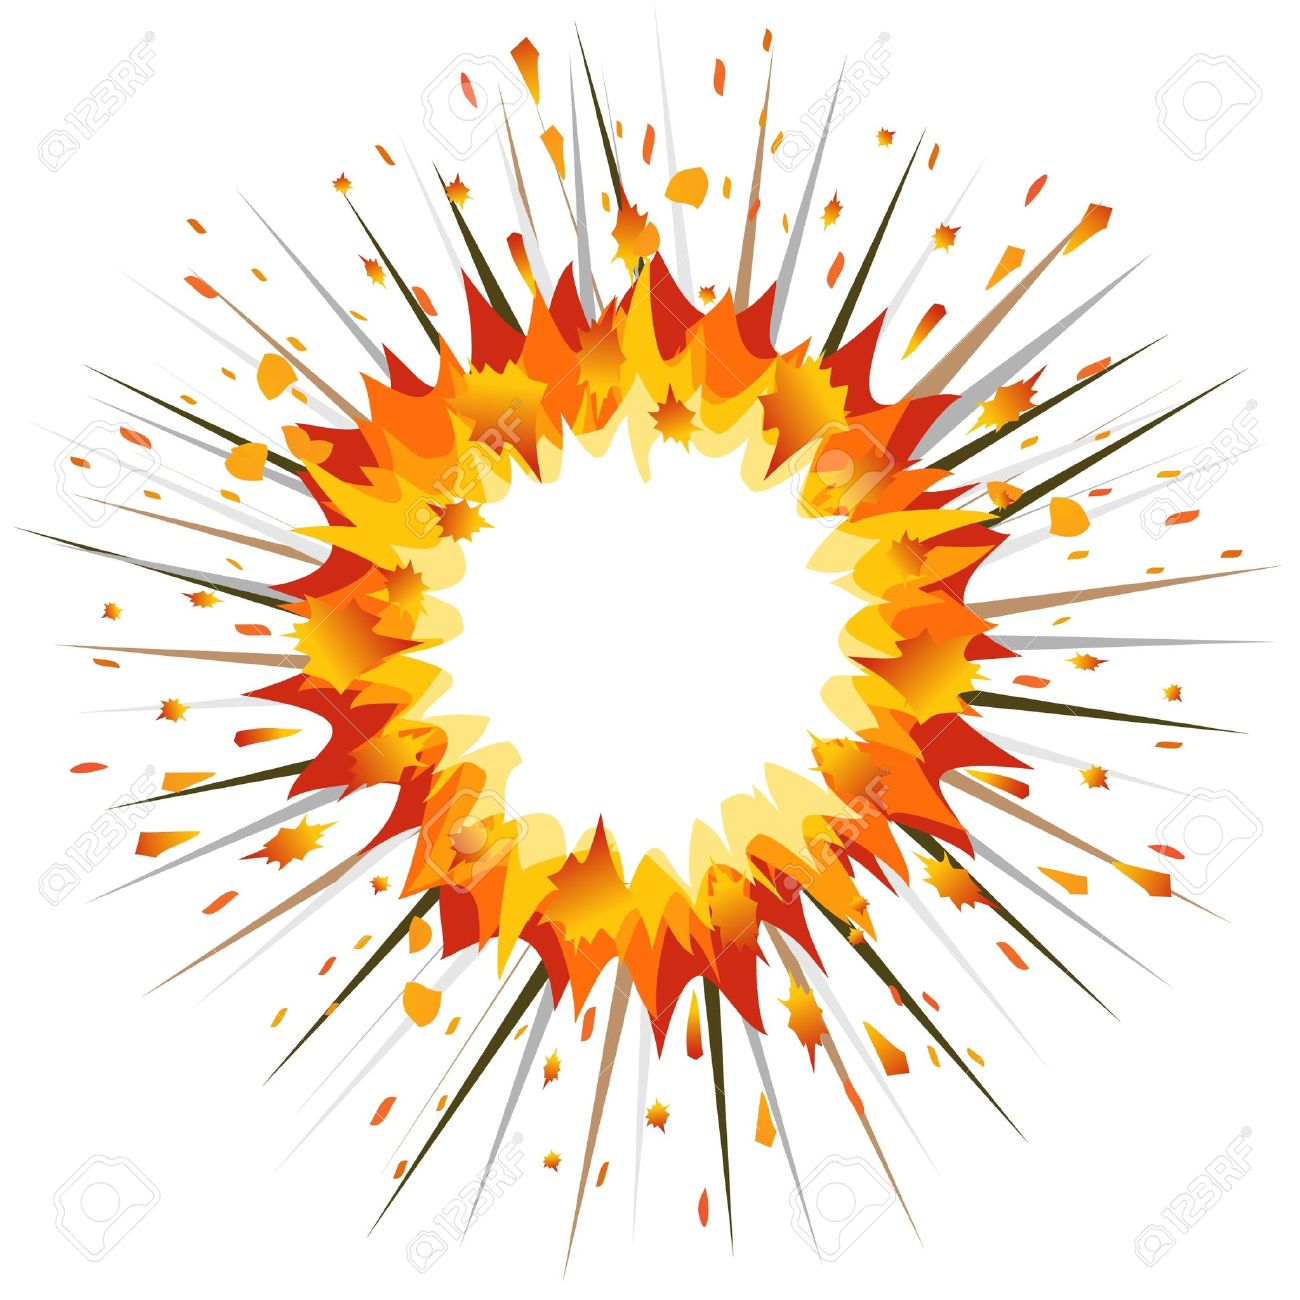 Big Bang Explosion PNG - 144736